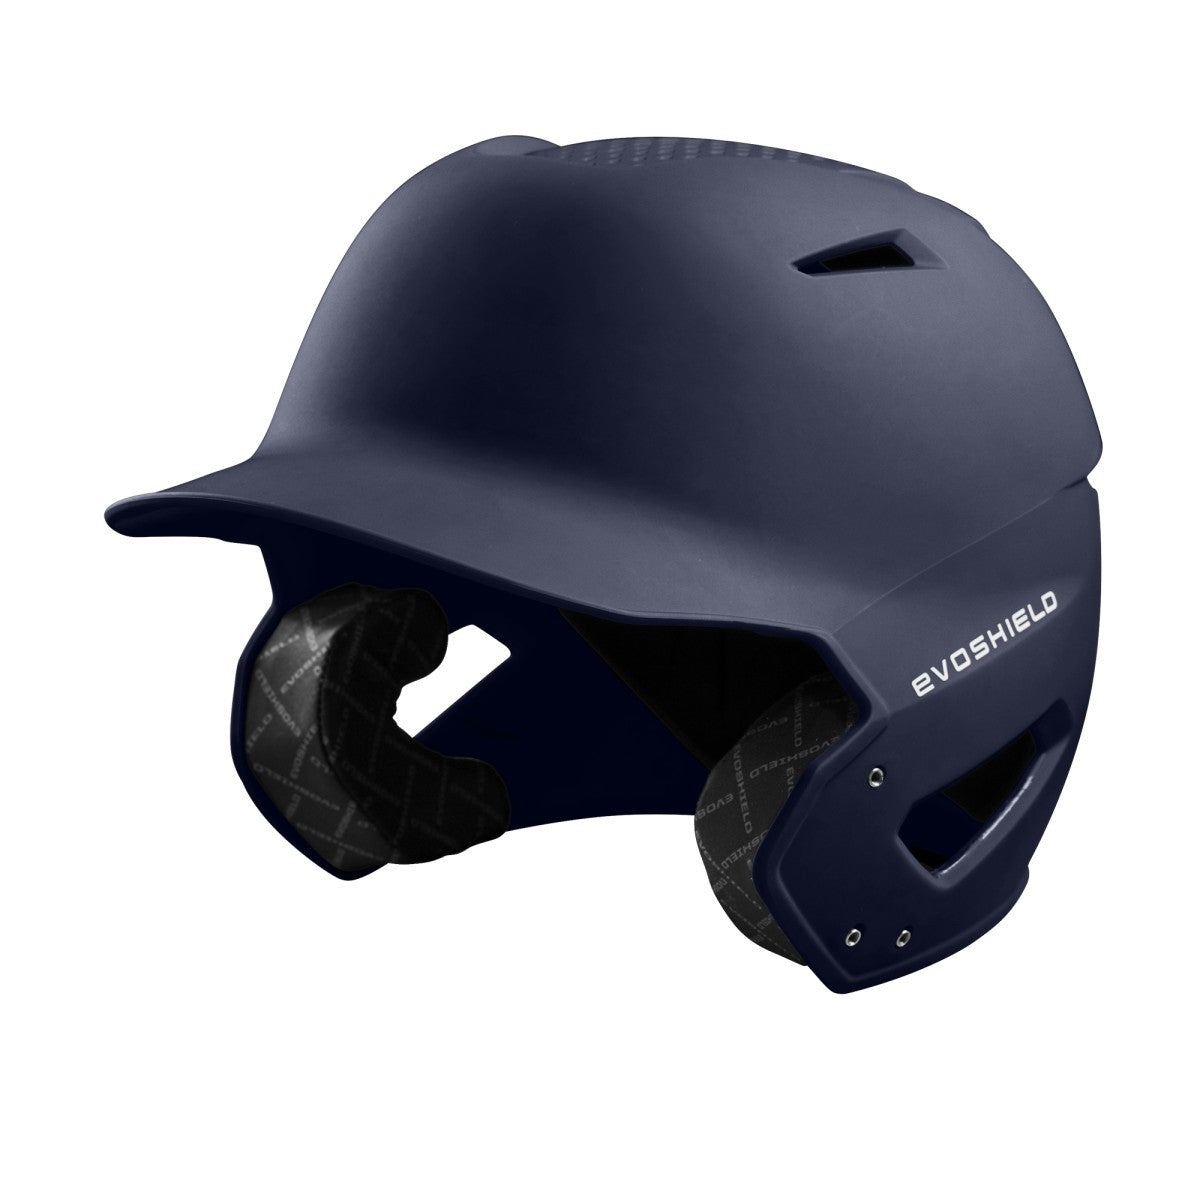 EvoShield XVT Batting Helmet - Navy Matte Finish (WTV7115NA)